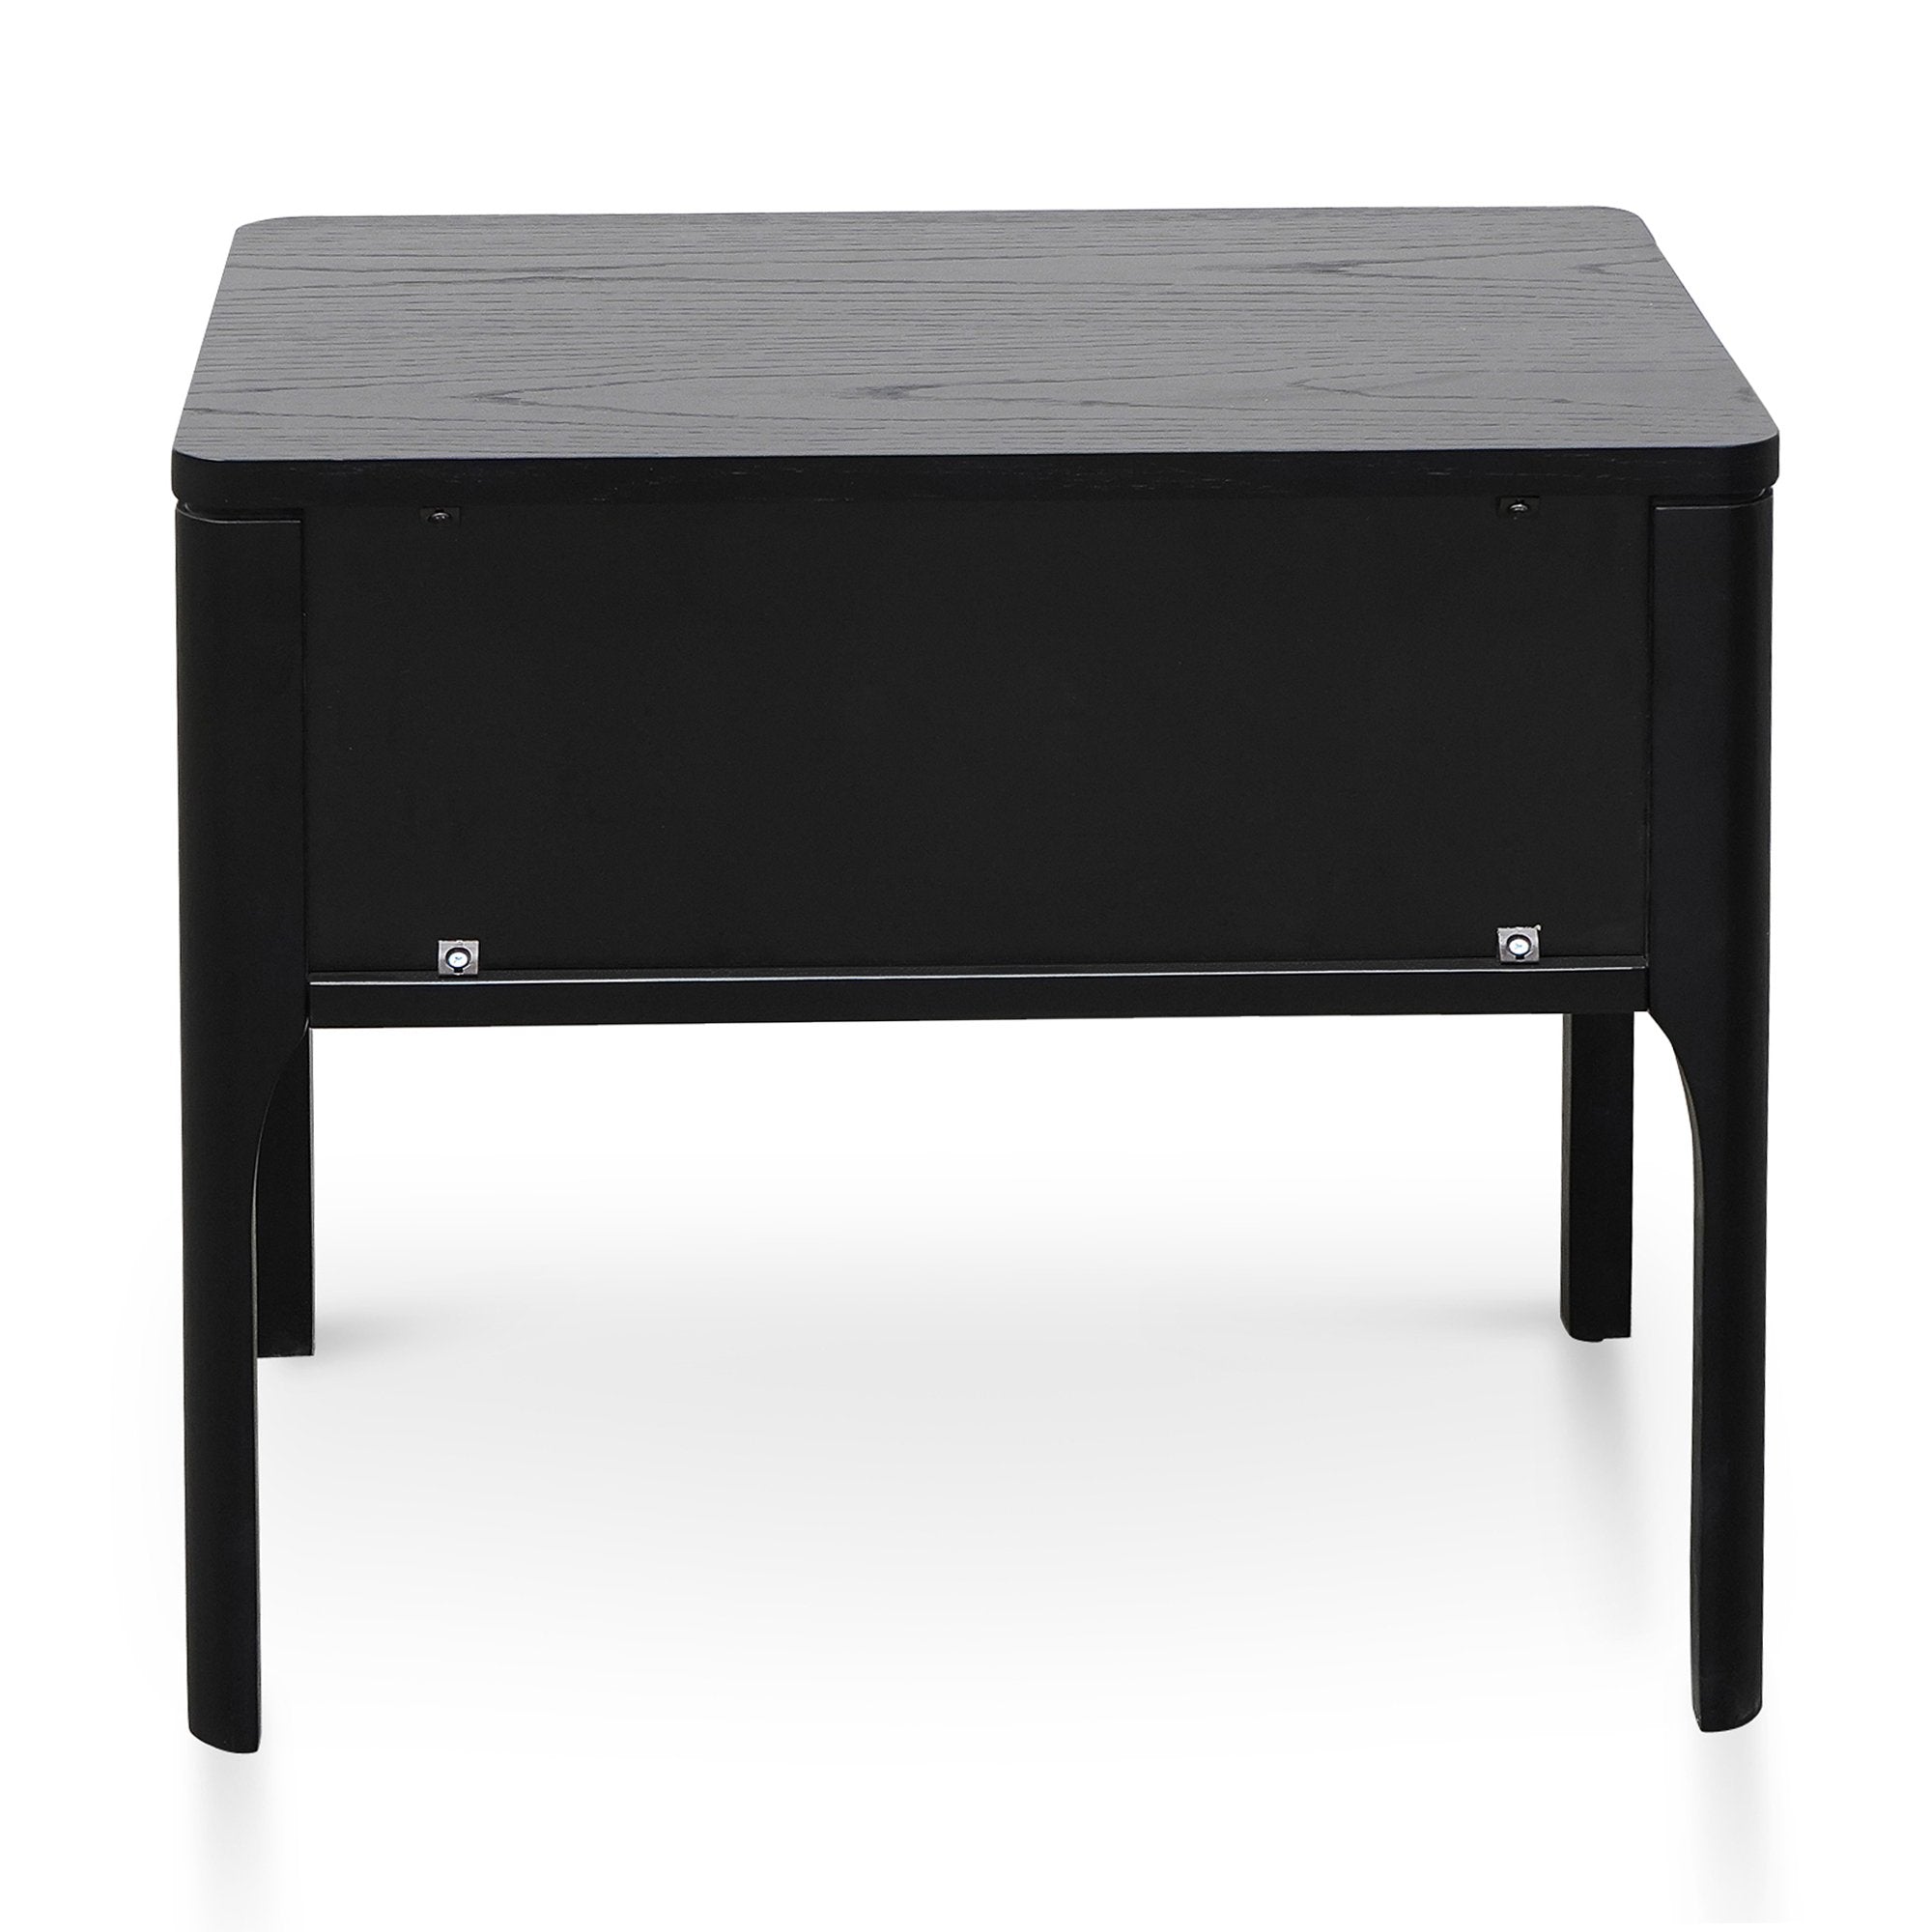 Aspen Wooden Bedside Table - Black - Bedside Tables